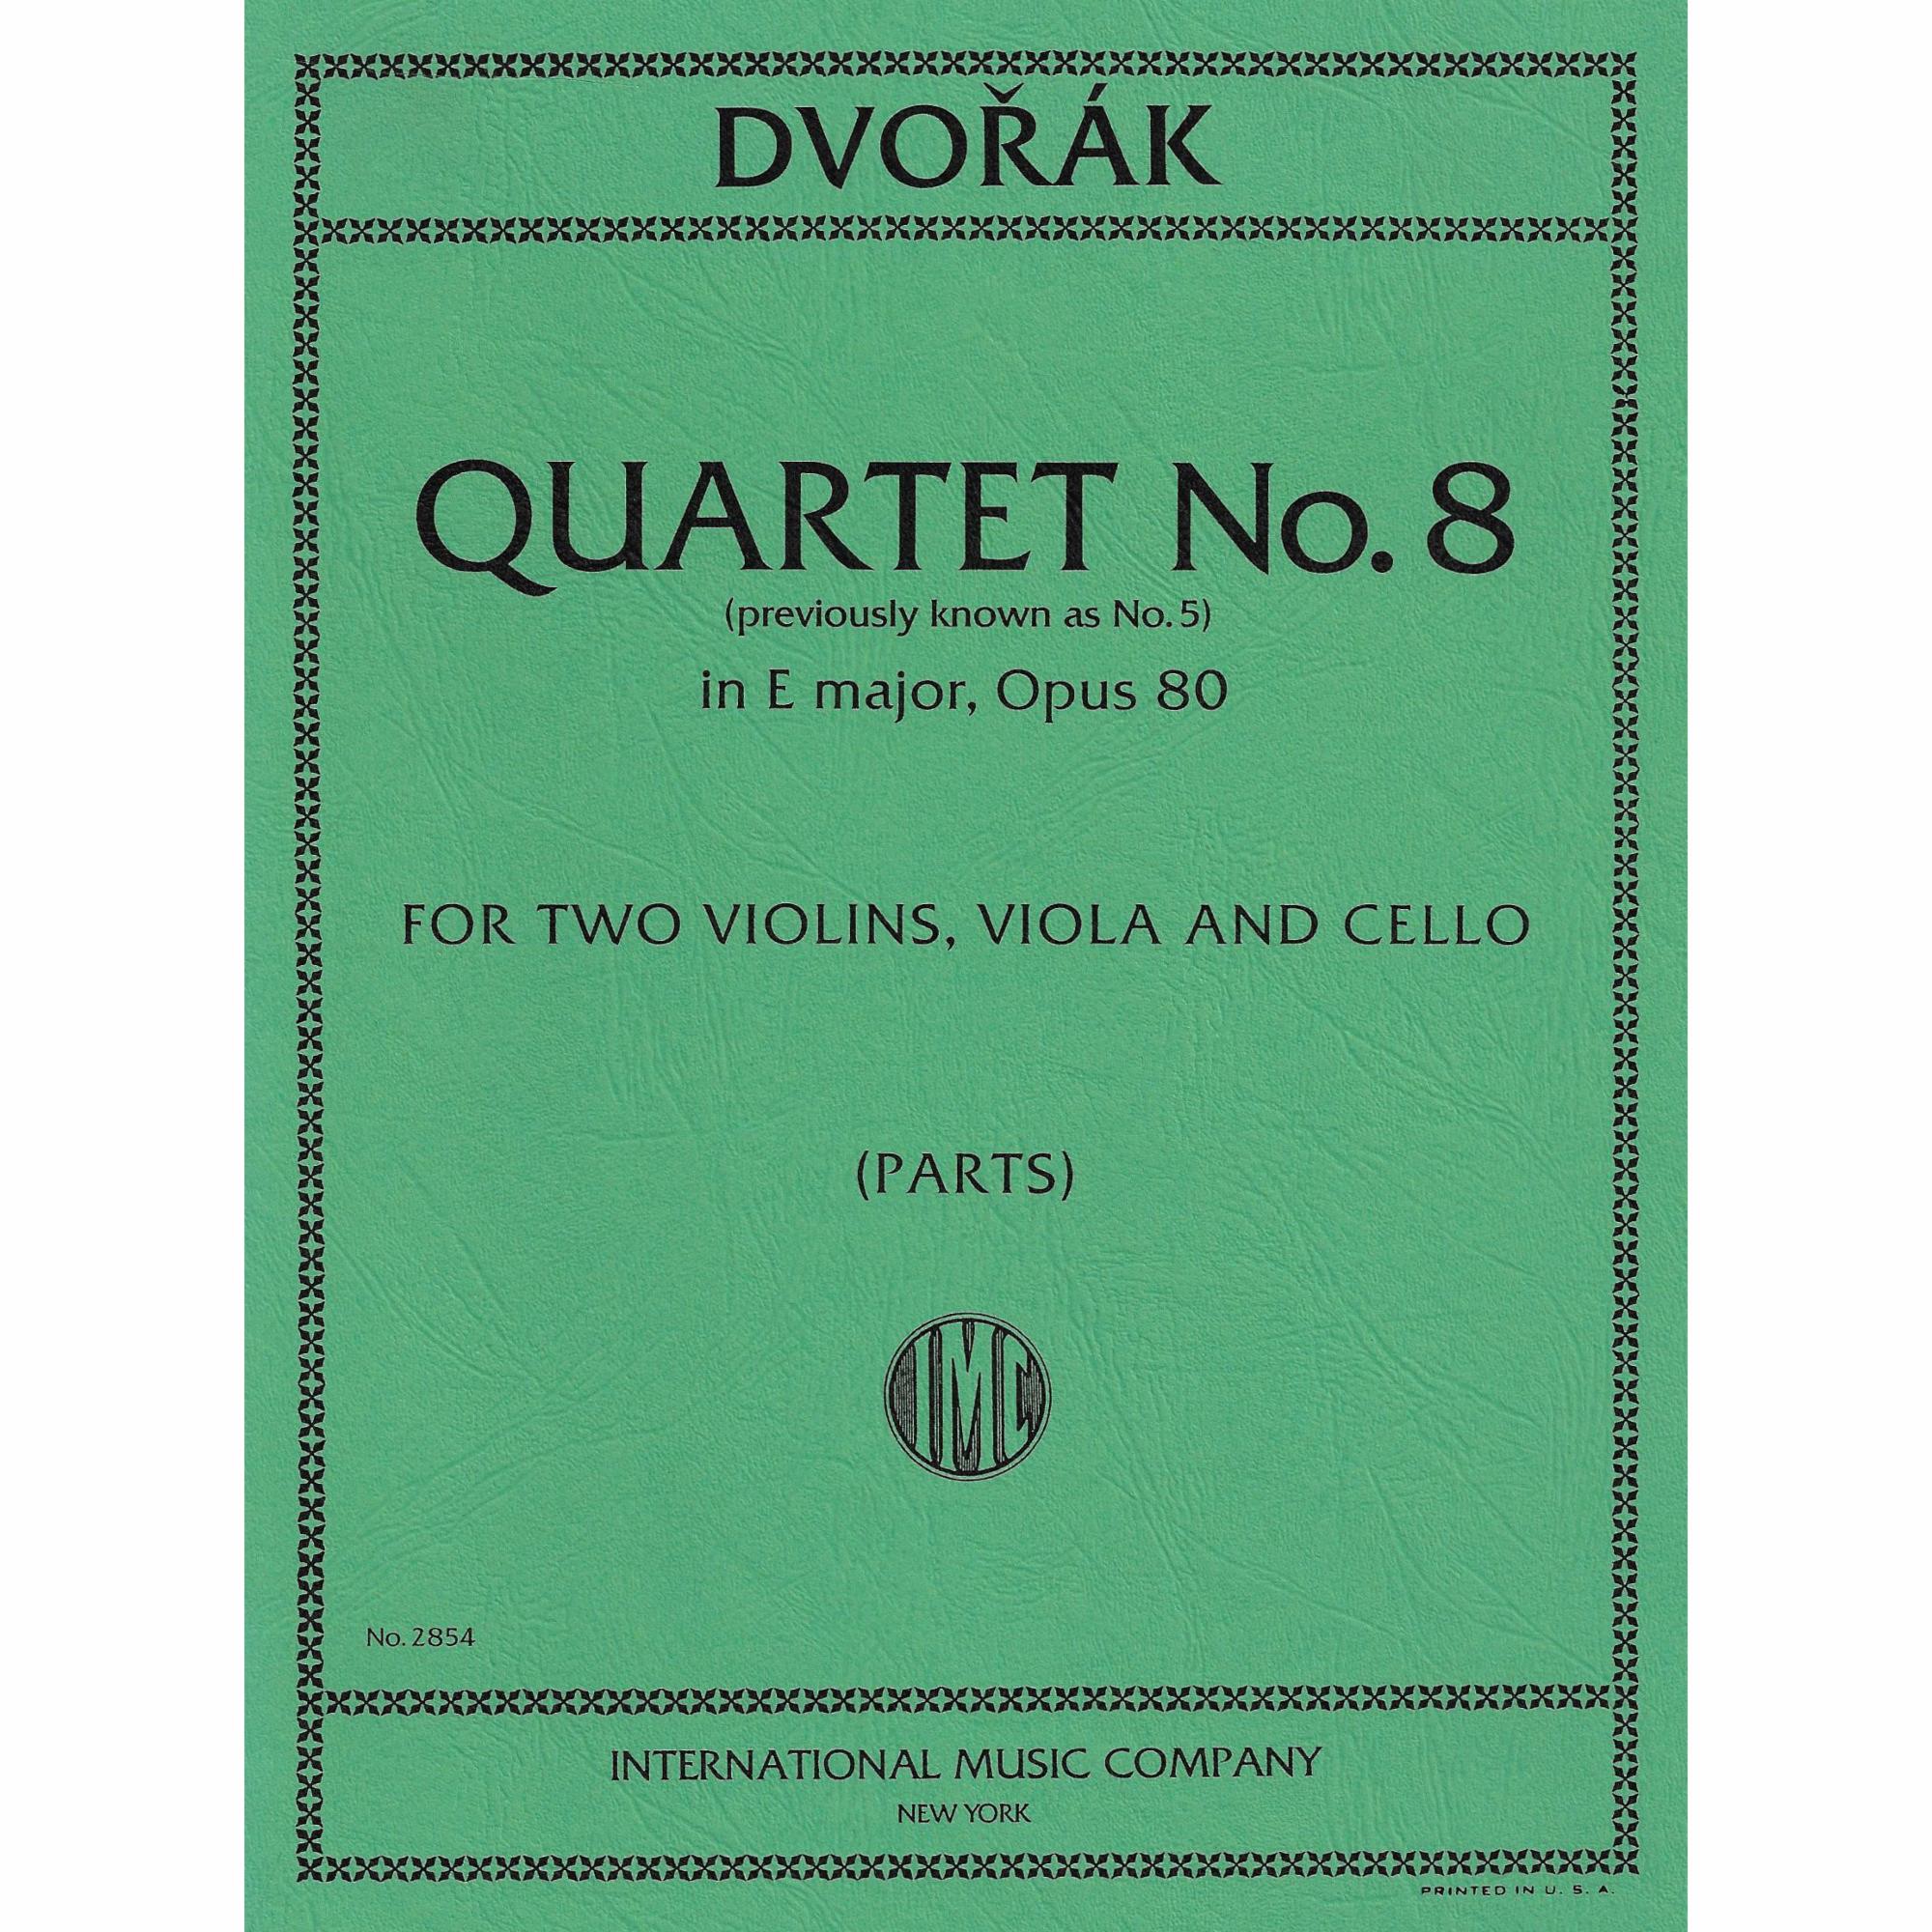 Dvorak -- String Quartet No. 8 in E major, Op. 80